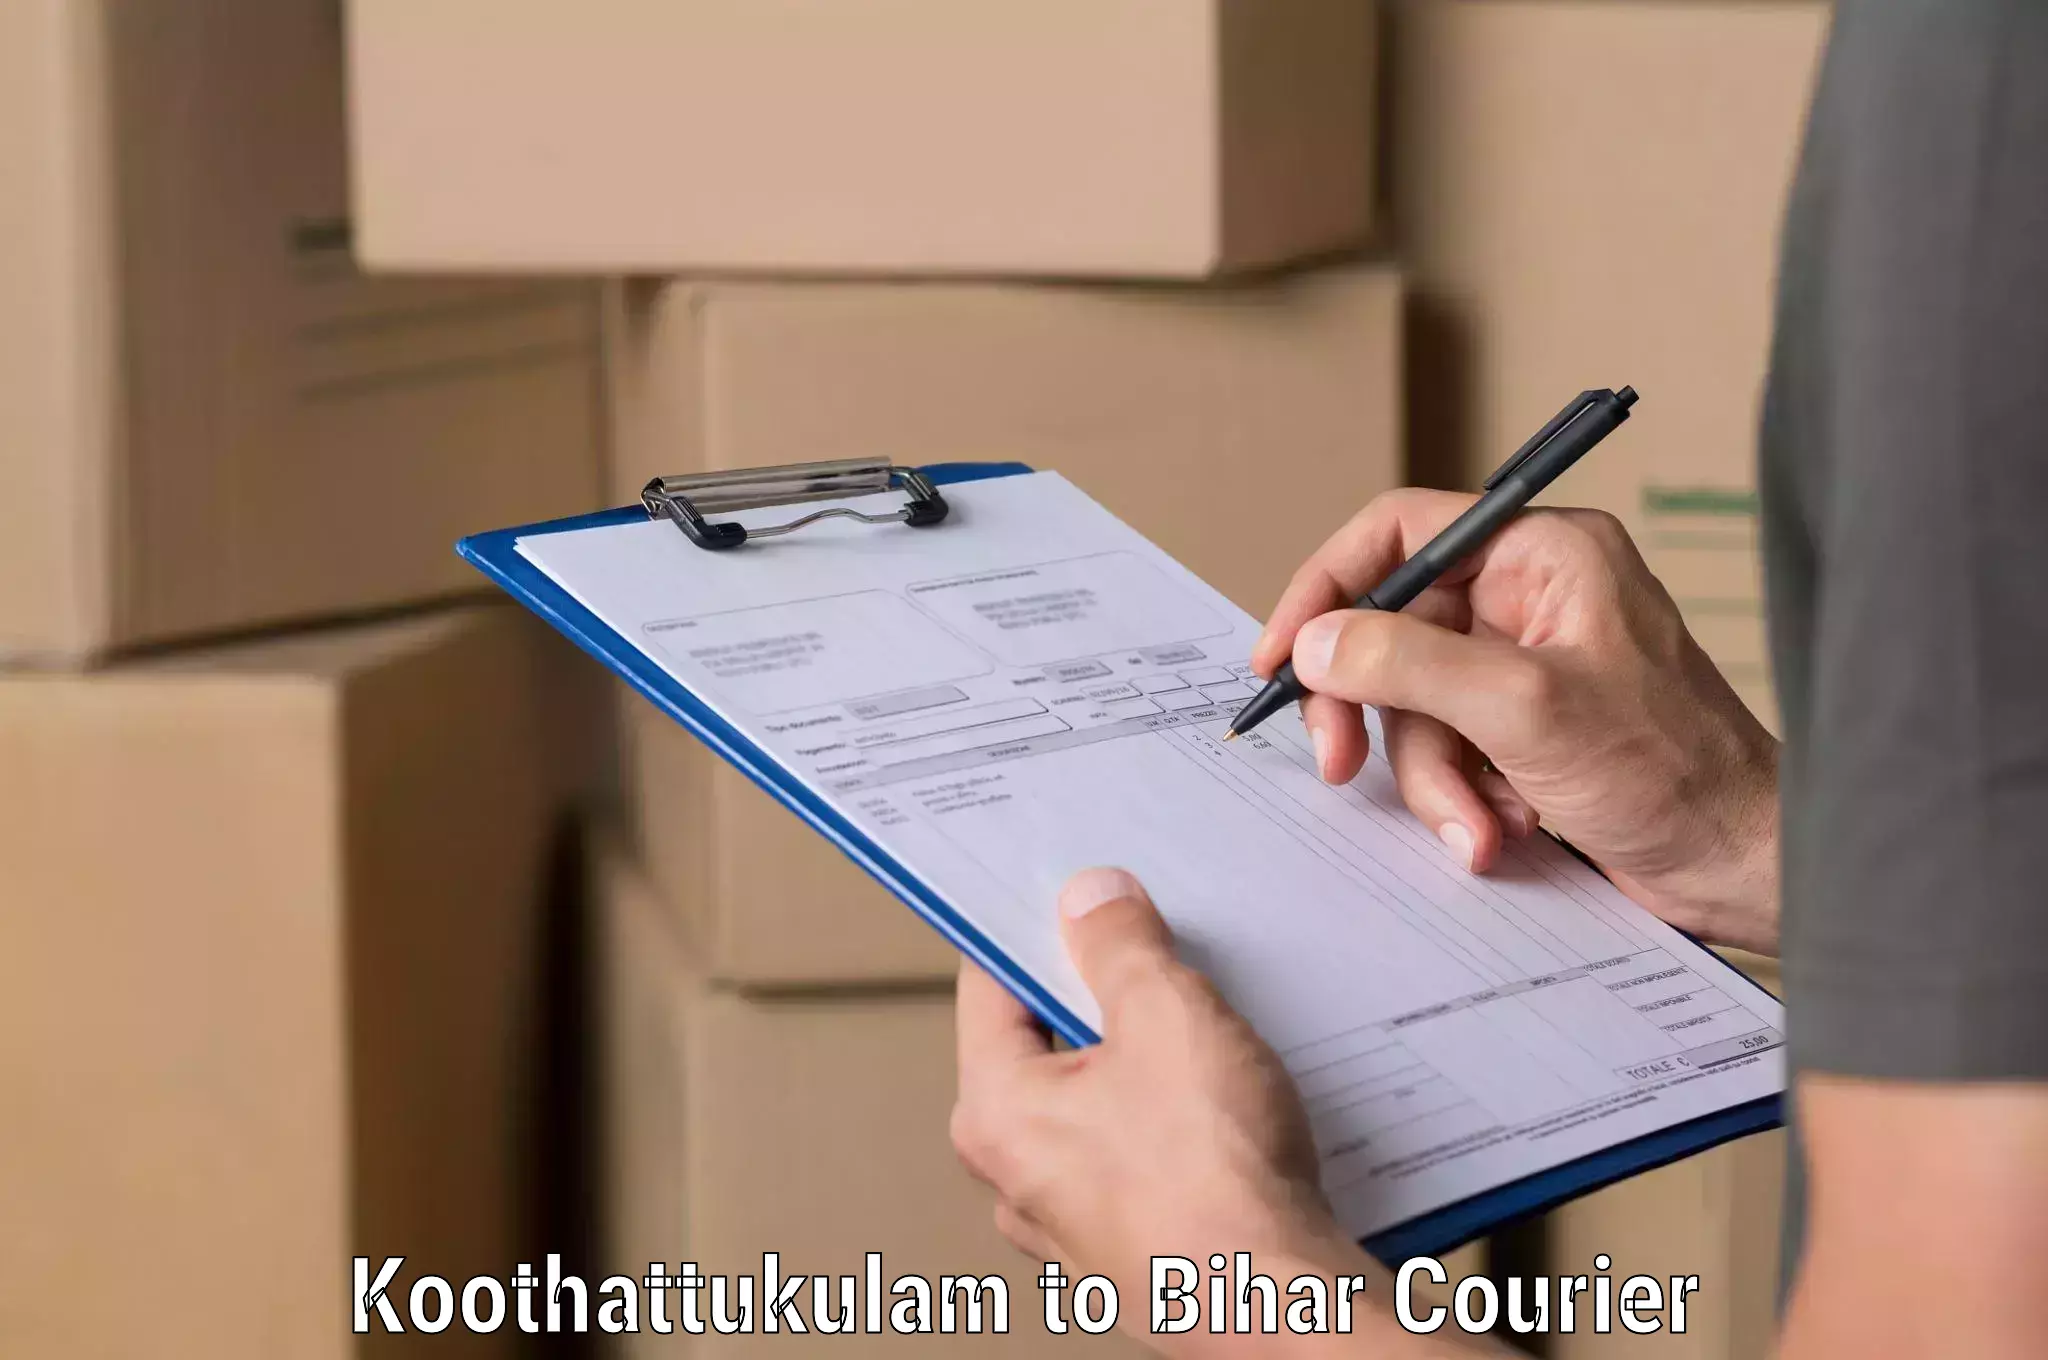 Business delivery service Koothattukulam to Madhubani